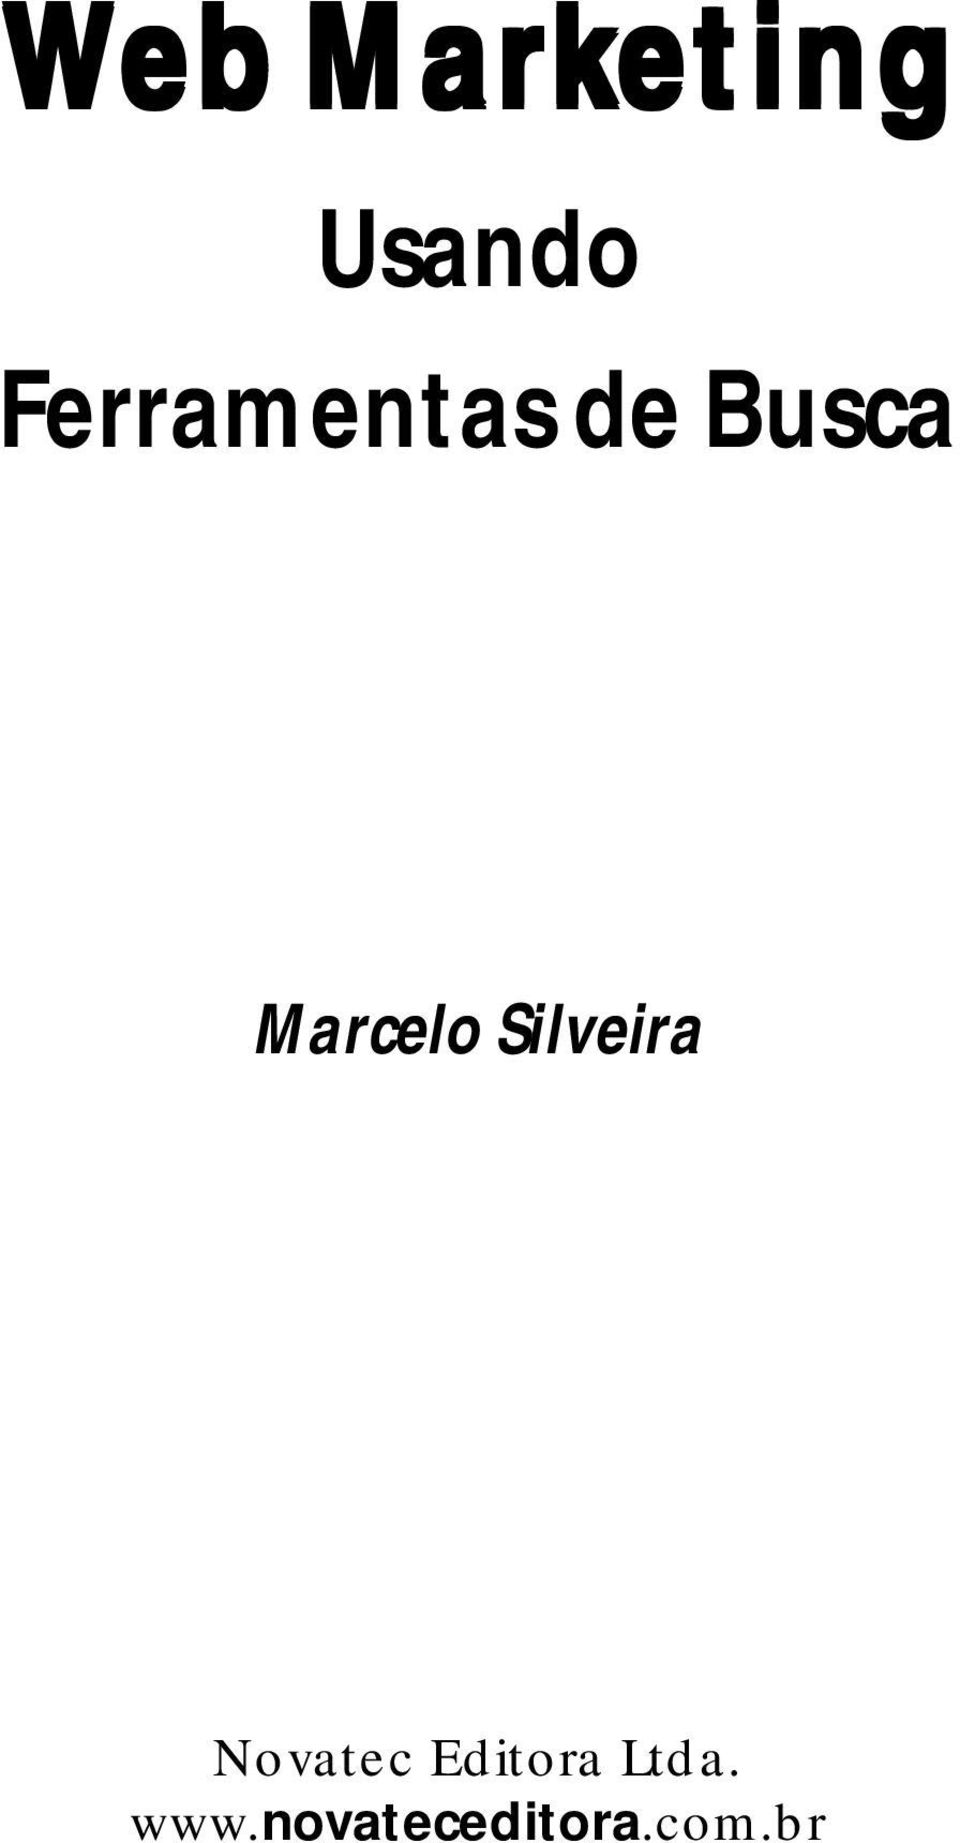 Marcelo Silveira Novatec